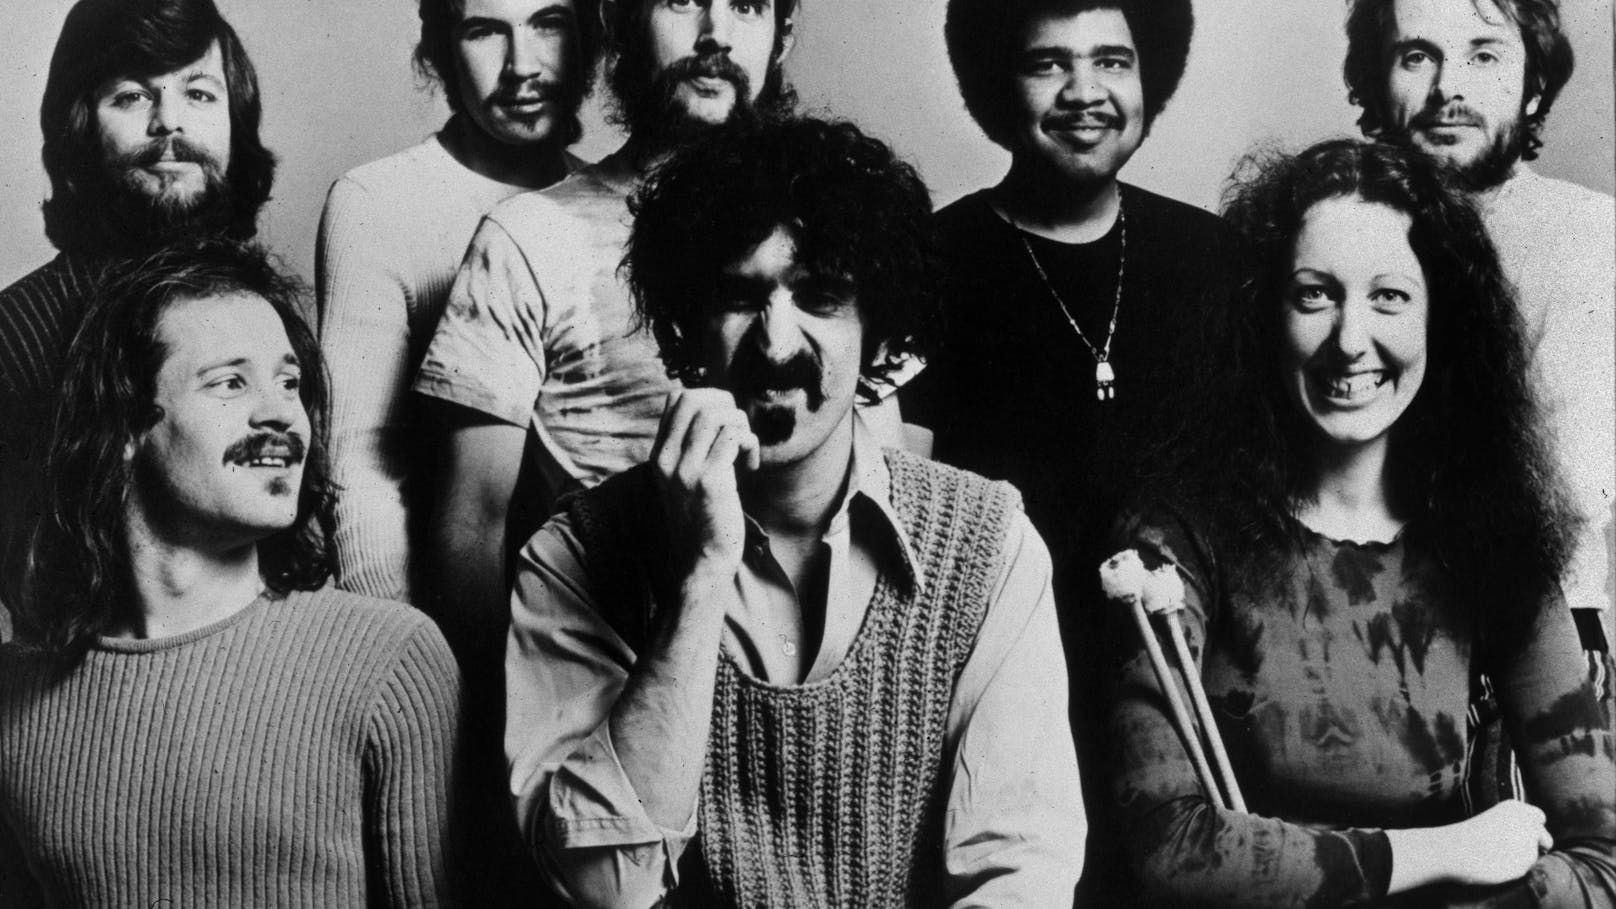 Frank Zappa mit seiner Band The Mothers of Invention 1971. Nur wenige Wochen nach der Aufnahme dieses Fotos inspirierte das Feuer bei ihrem Konzert in Montreux Deep Purples "Smoke On The Water"